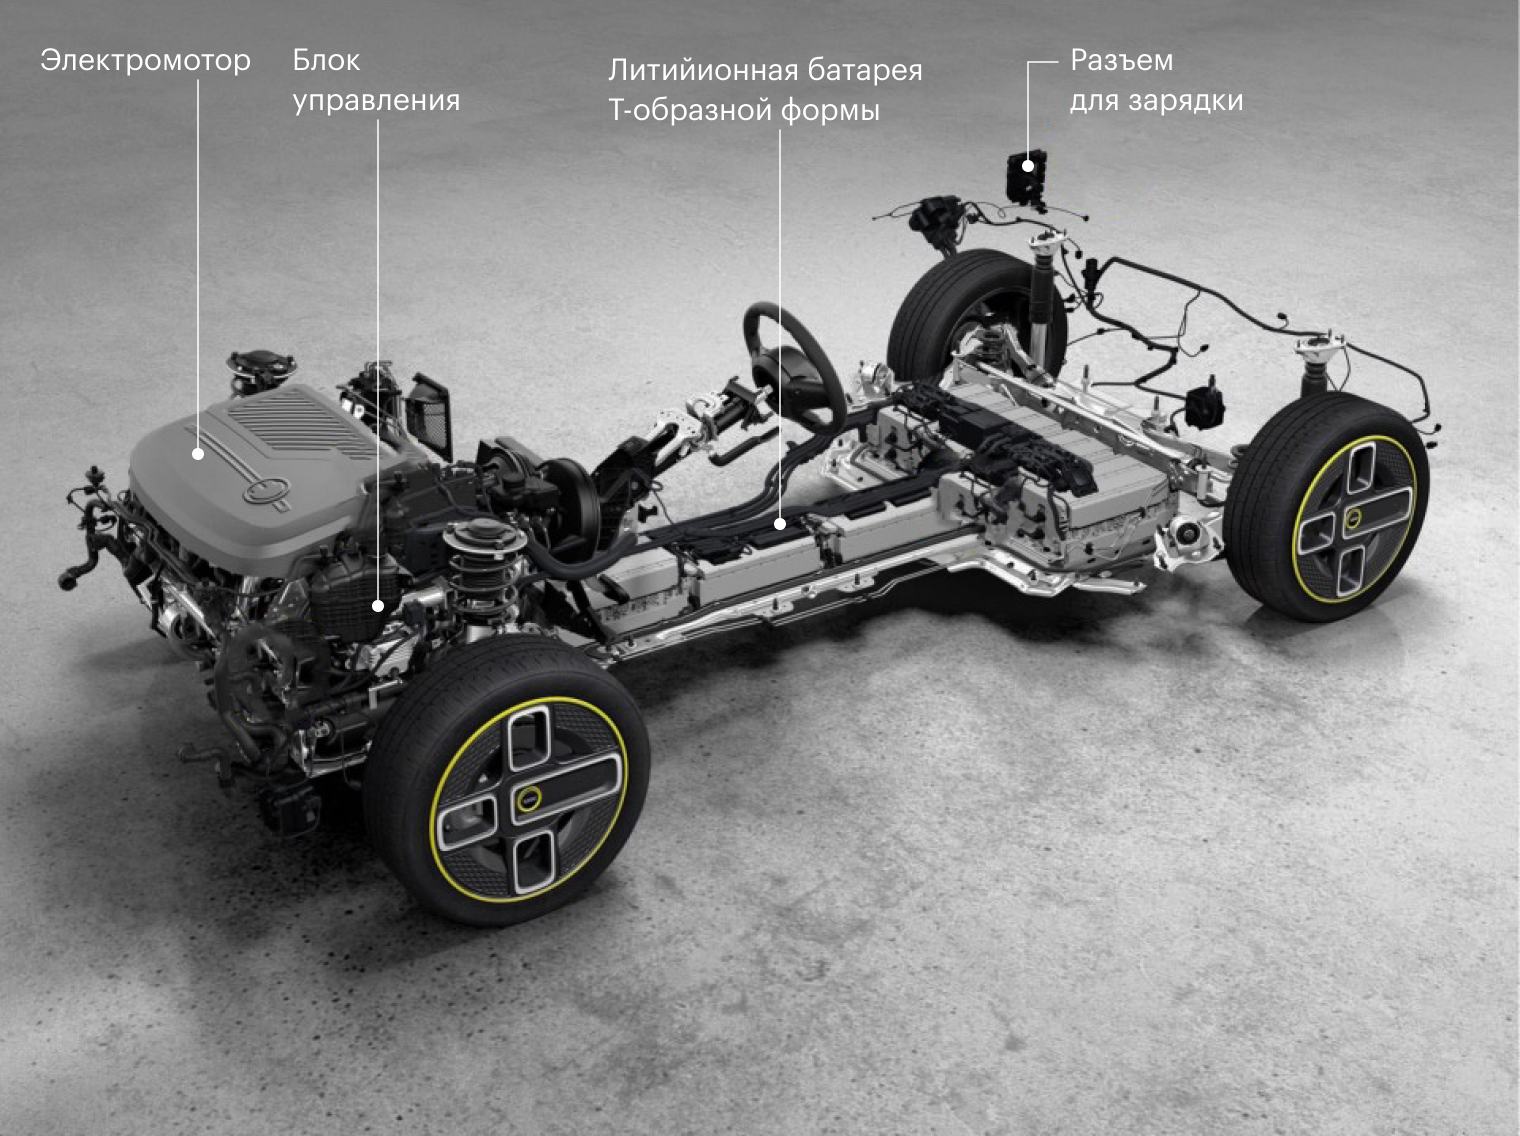 Схема электрического MINI Cooper SE в кузове F56, который сделали на базе бензинового хэтчбэка. Источник: mini.ru